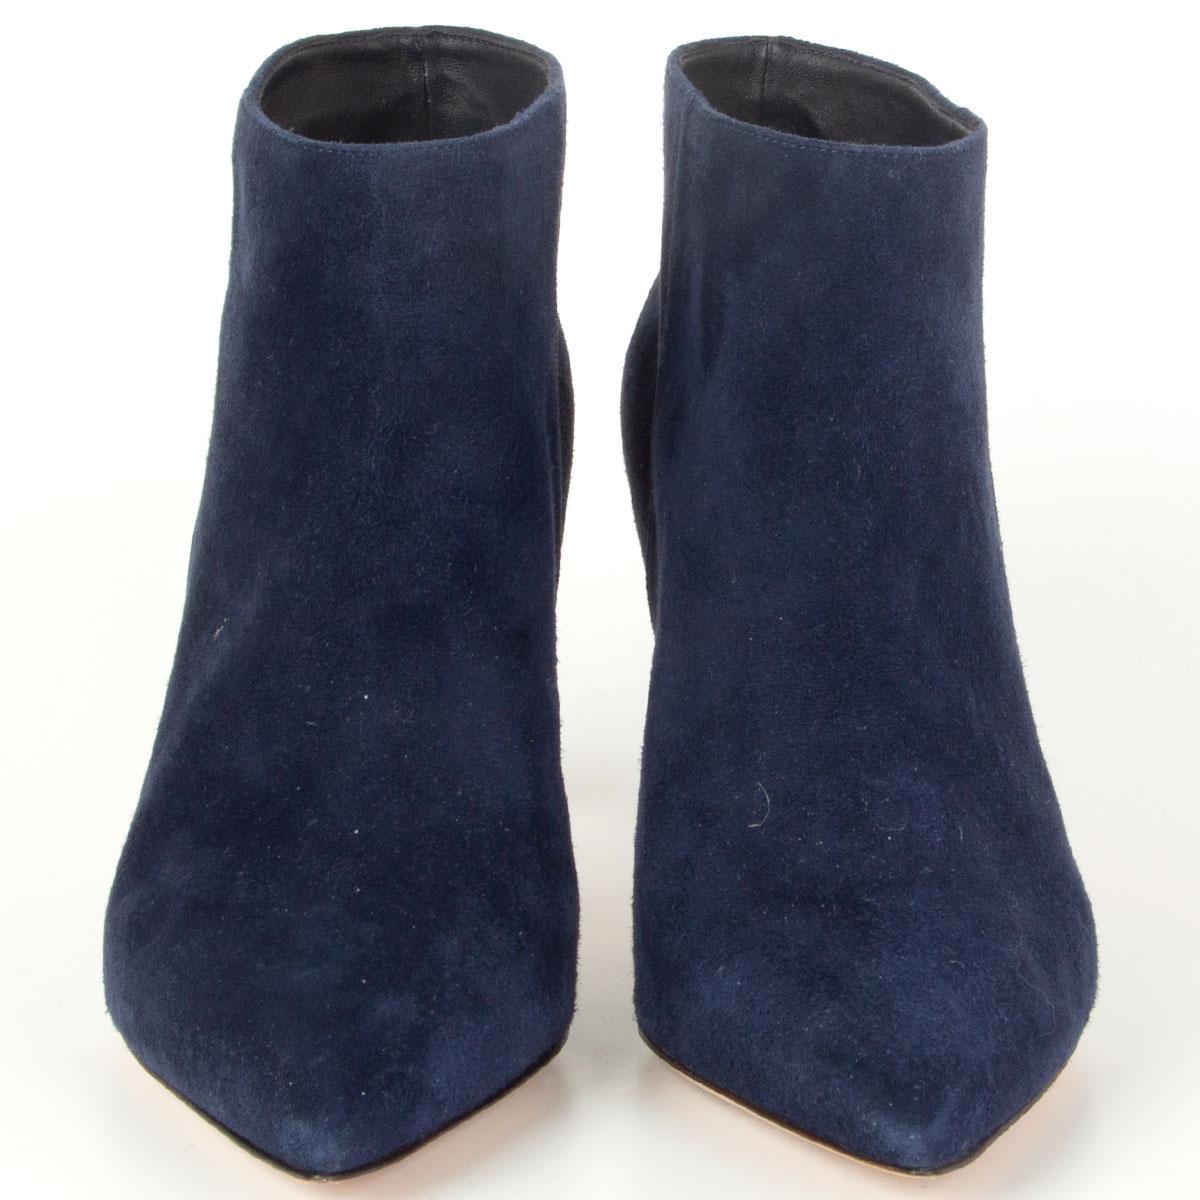 100% authentische Gianvito Rossi 'Stilo' spitz zulaufende Stiefeletten aus navyblauem Wildleder. Sie wurden einmal getragen und sind in ausgezeichnetem Zustand. 

Aufgedruckt Größe 36
Schuhgröße 36
Innensohle 23cm (9in)
Breite 7cm (2.7in)
Absatz 8,5